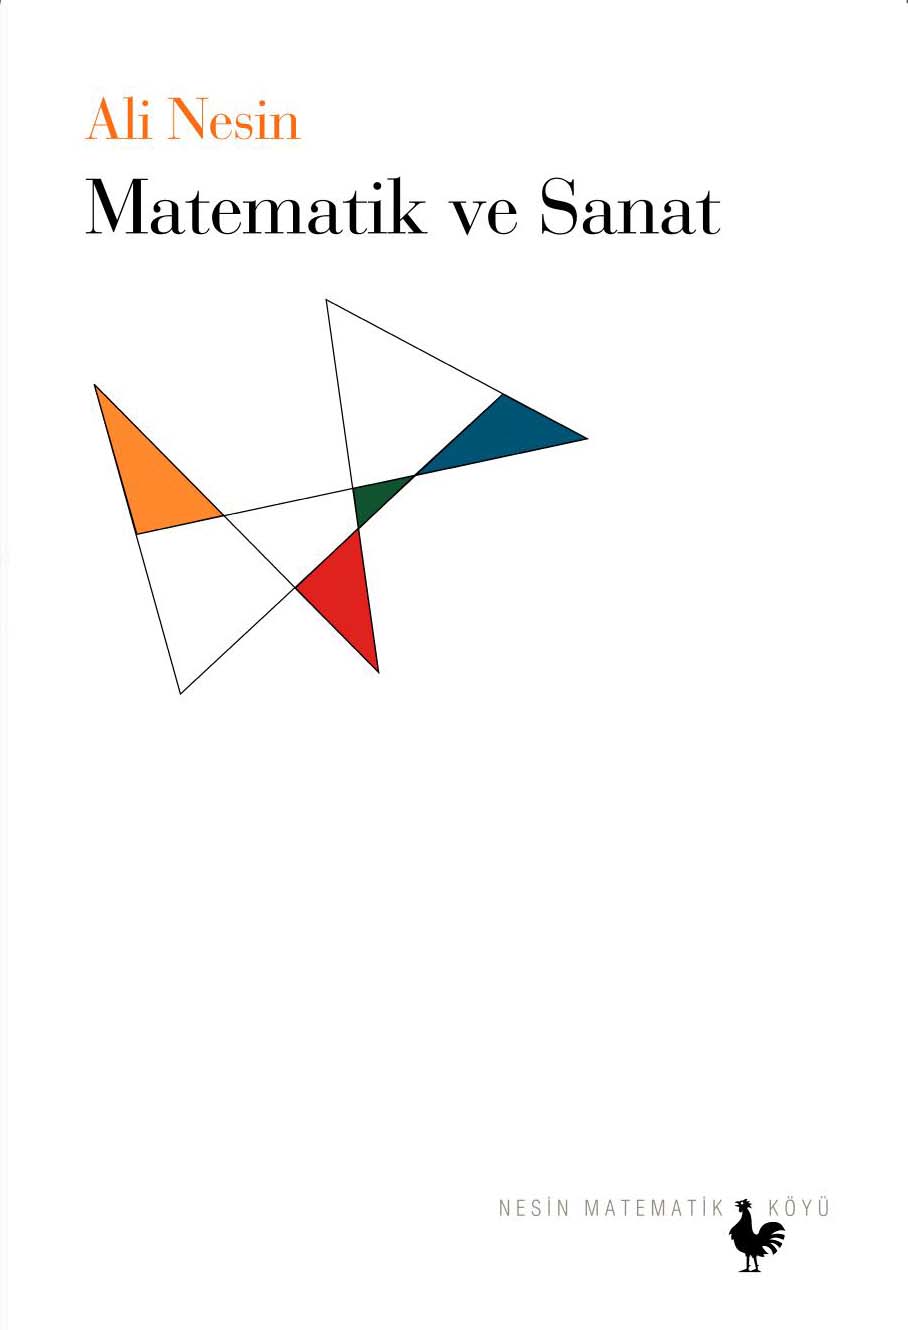 Ali Nesin "Matematik ve Sanat" - Nesin Yayınevi